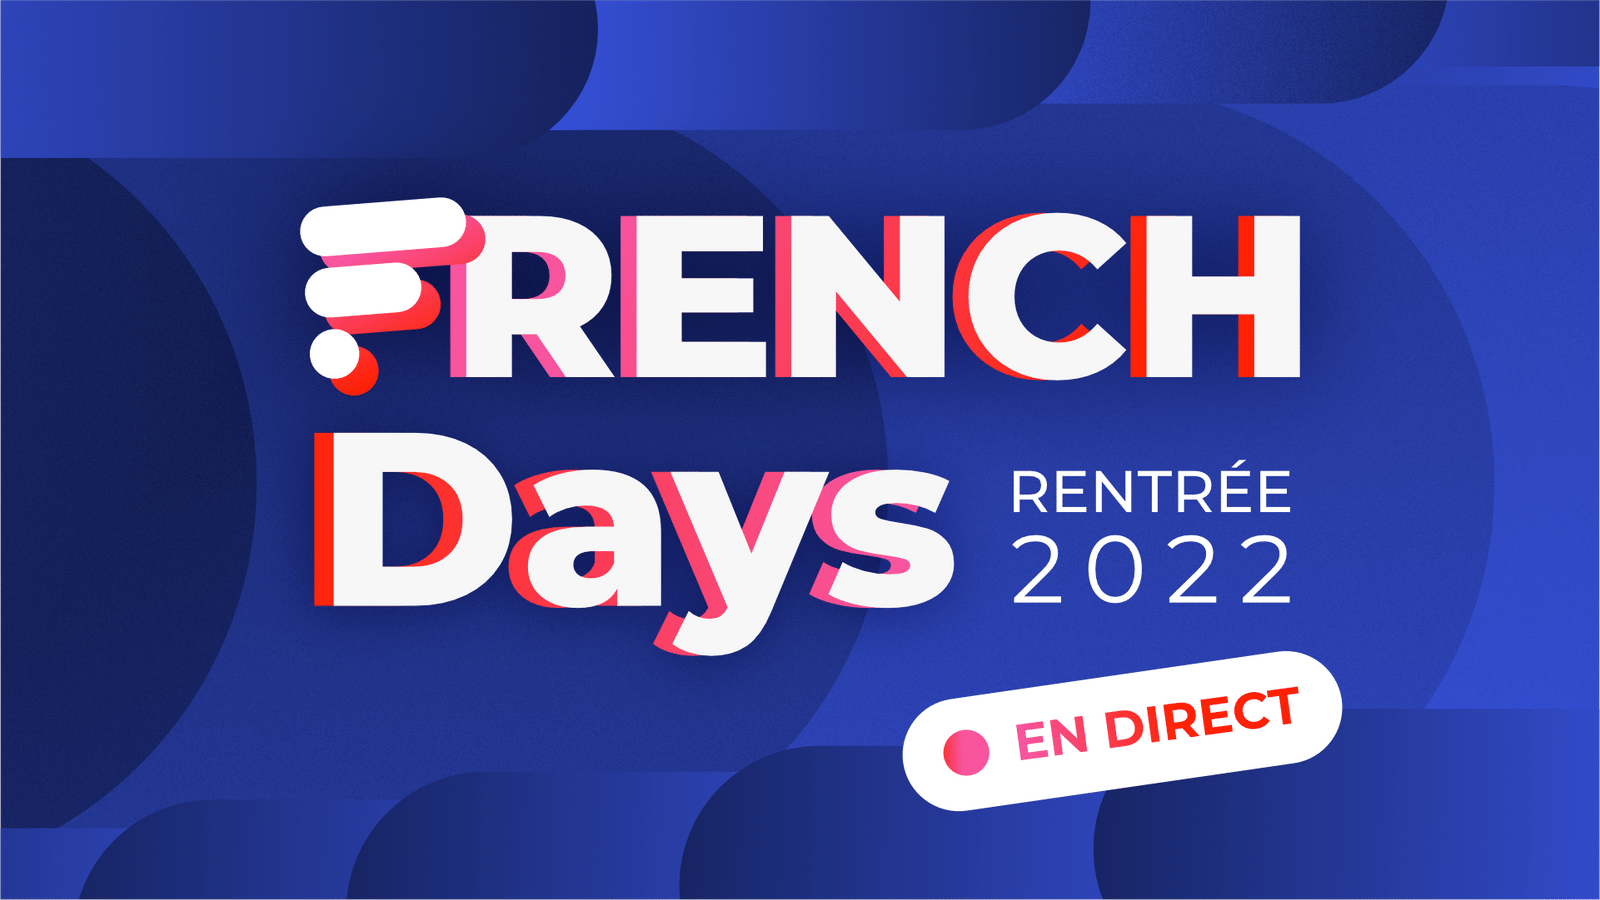 French Days 2022 : les meilleures offres en DIRECT pour le dernier jour